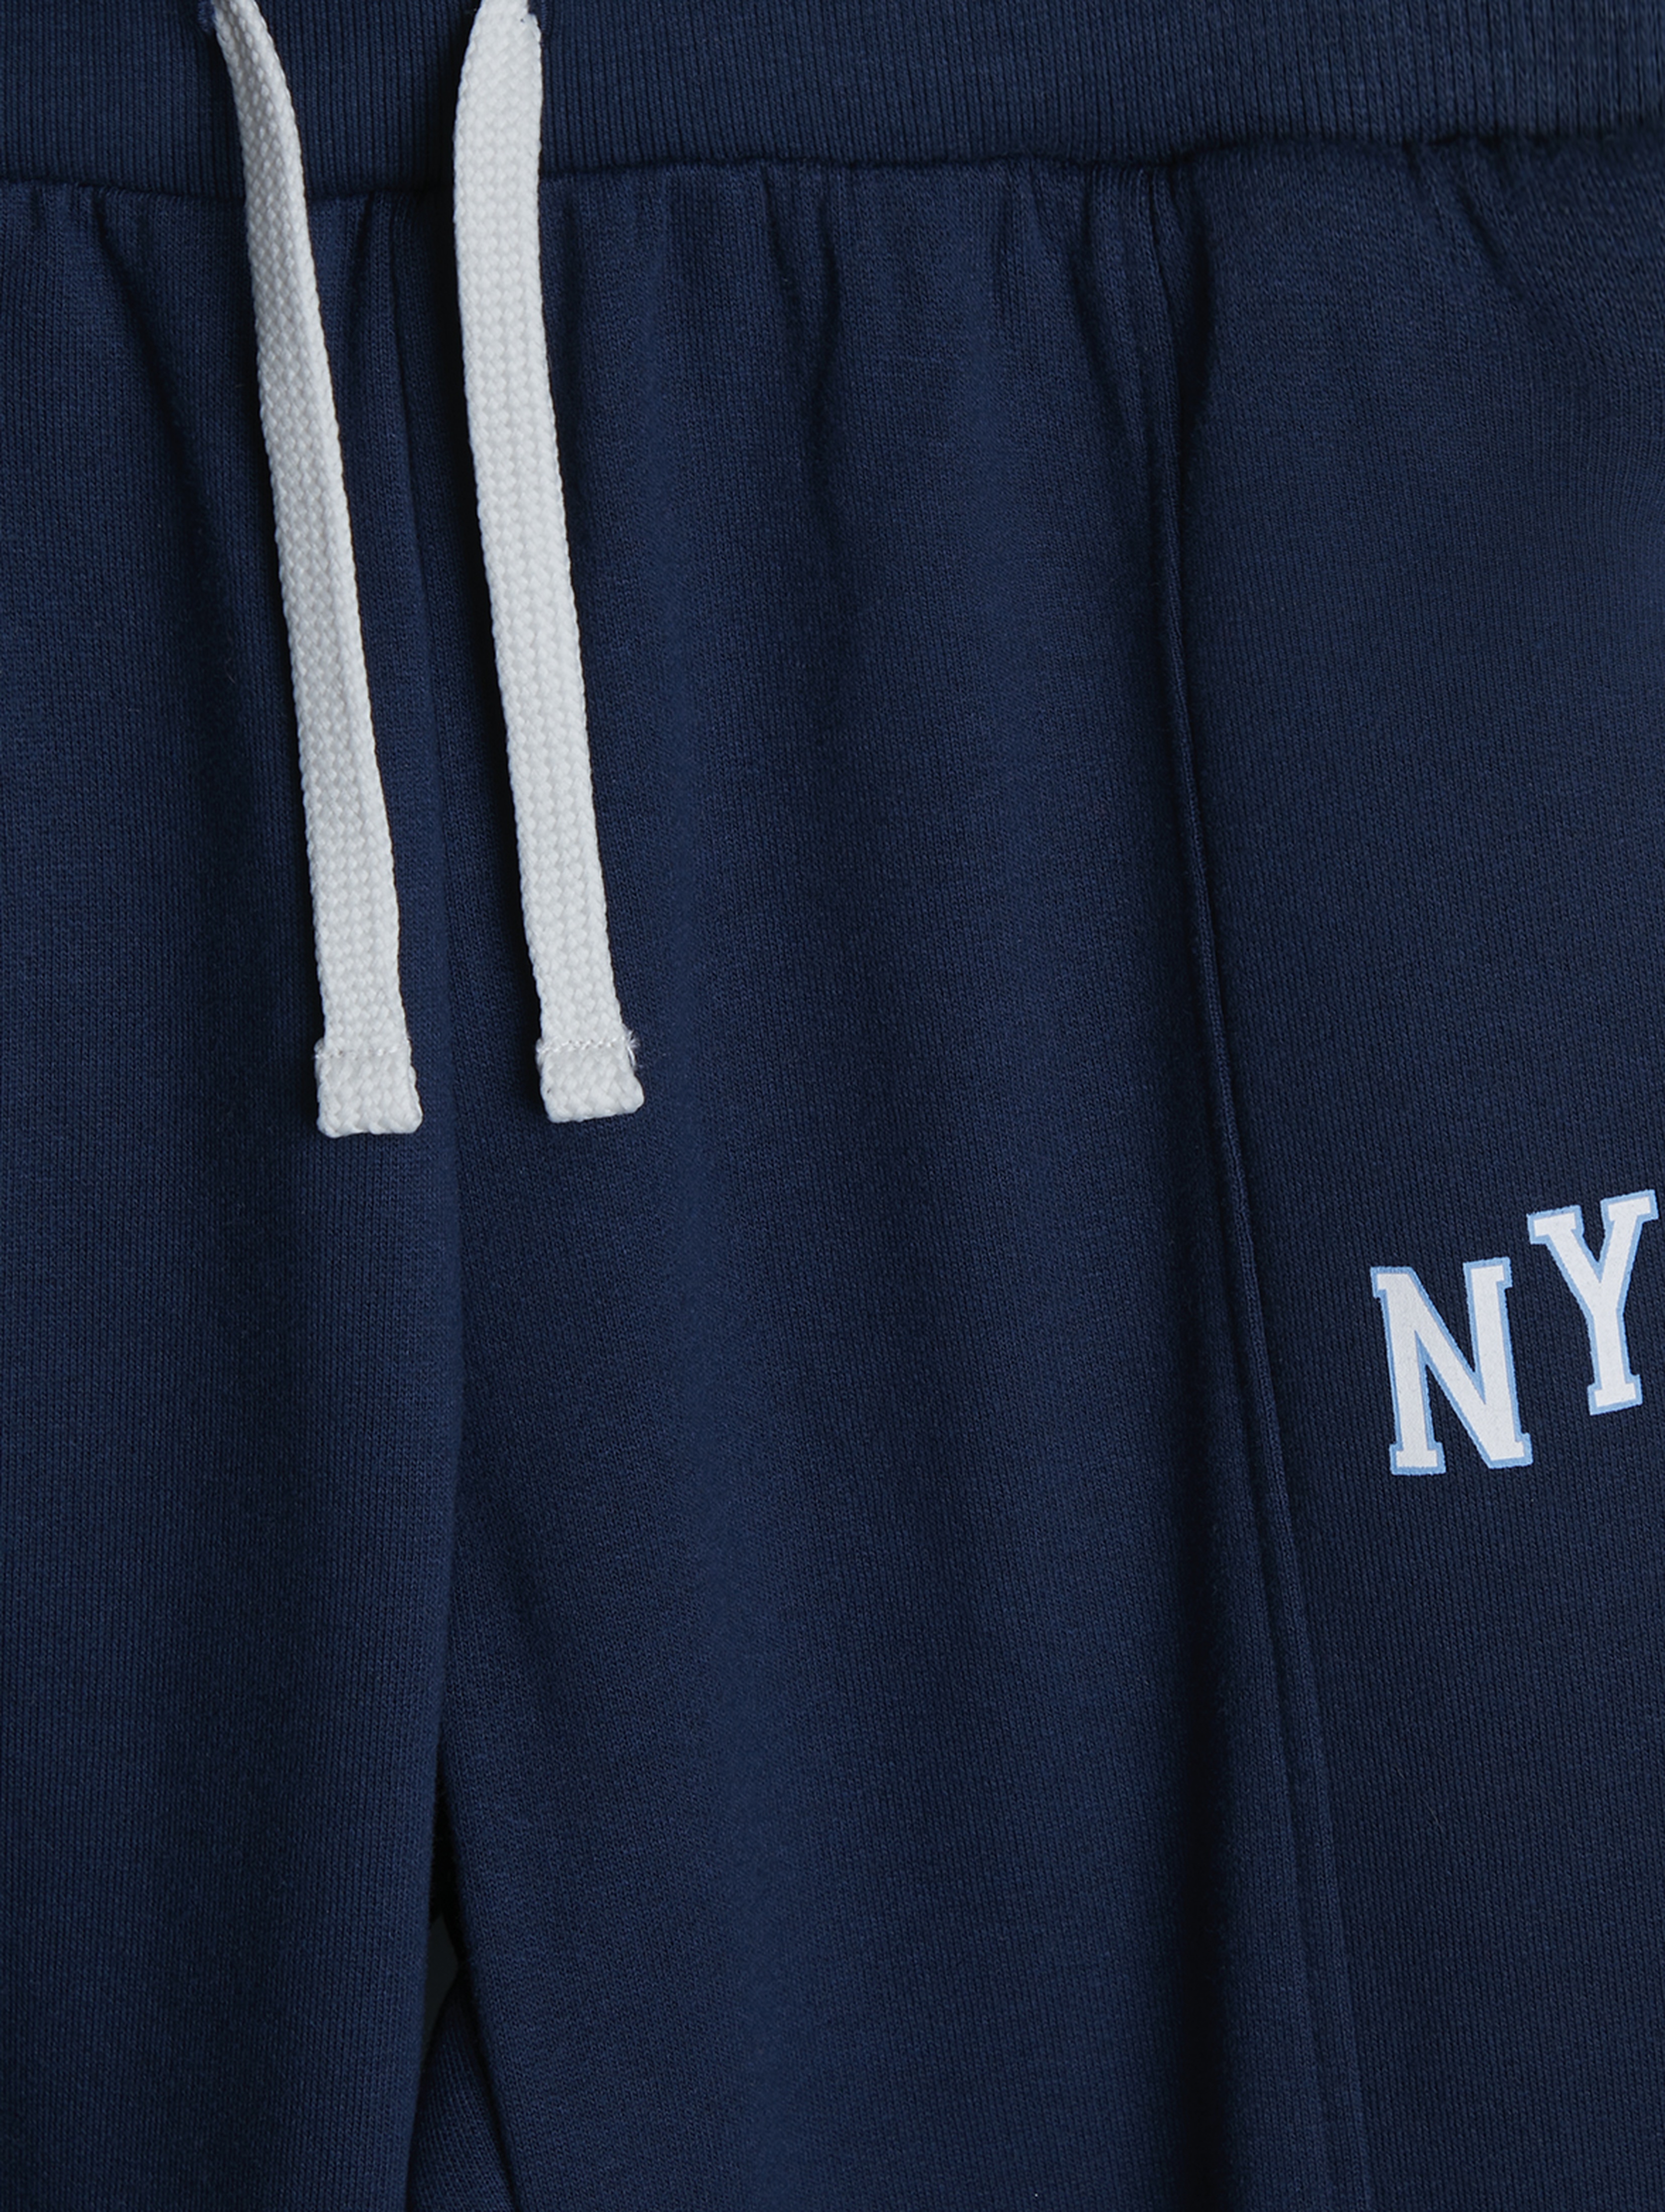 Granatowe spodnie dresowe NYC - Limited Edition